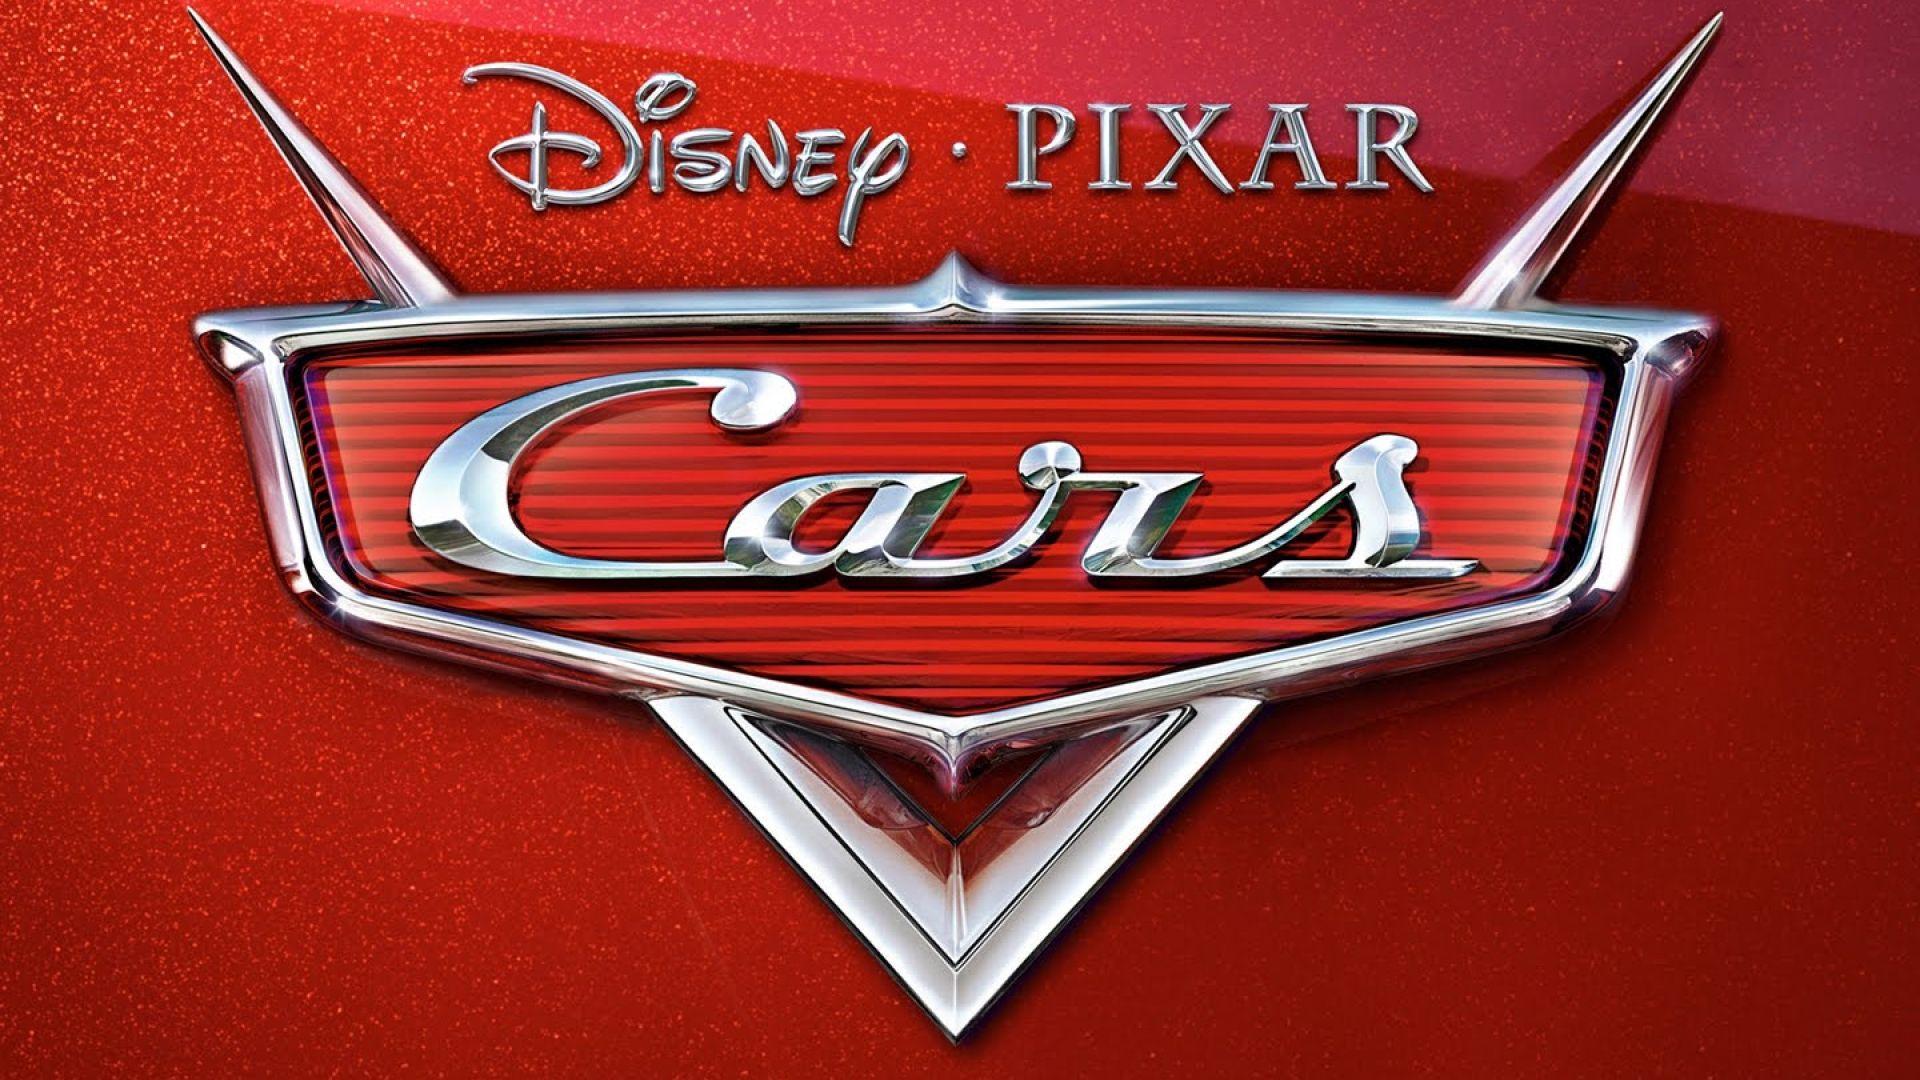 4 Disney Pixar Cars Logo - Disney Pixar Cars Wallpaper - HD Wallpapers